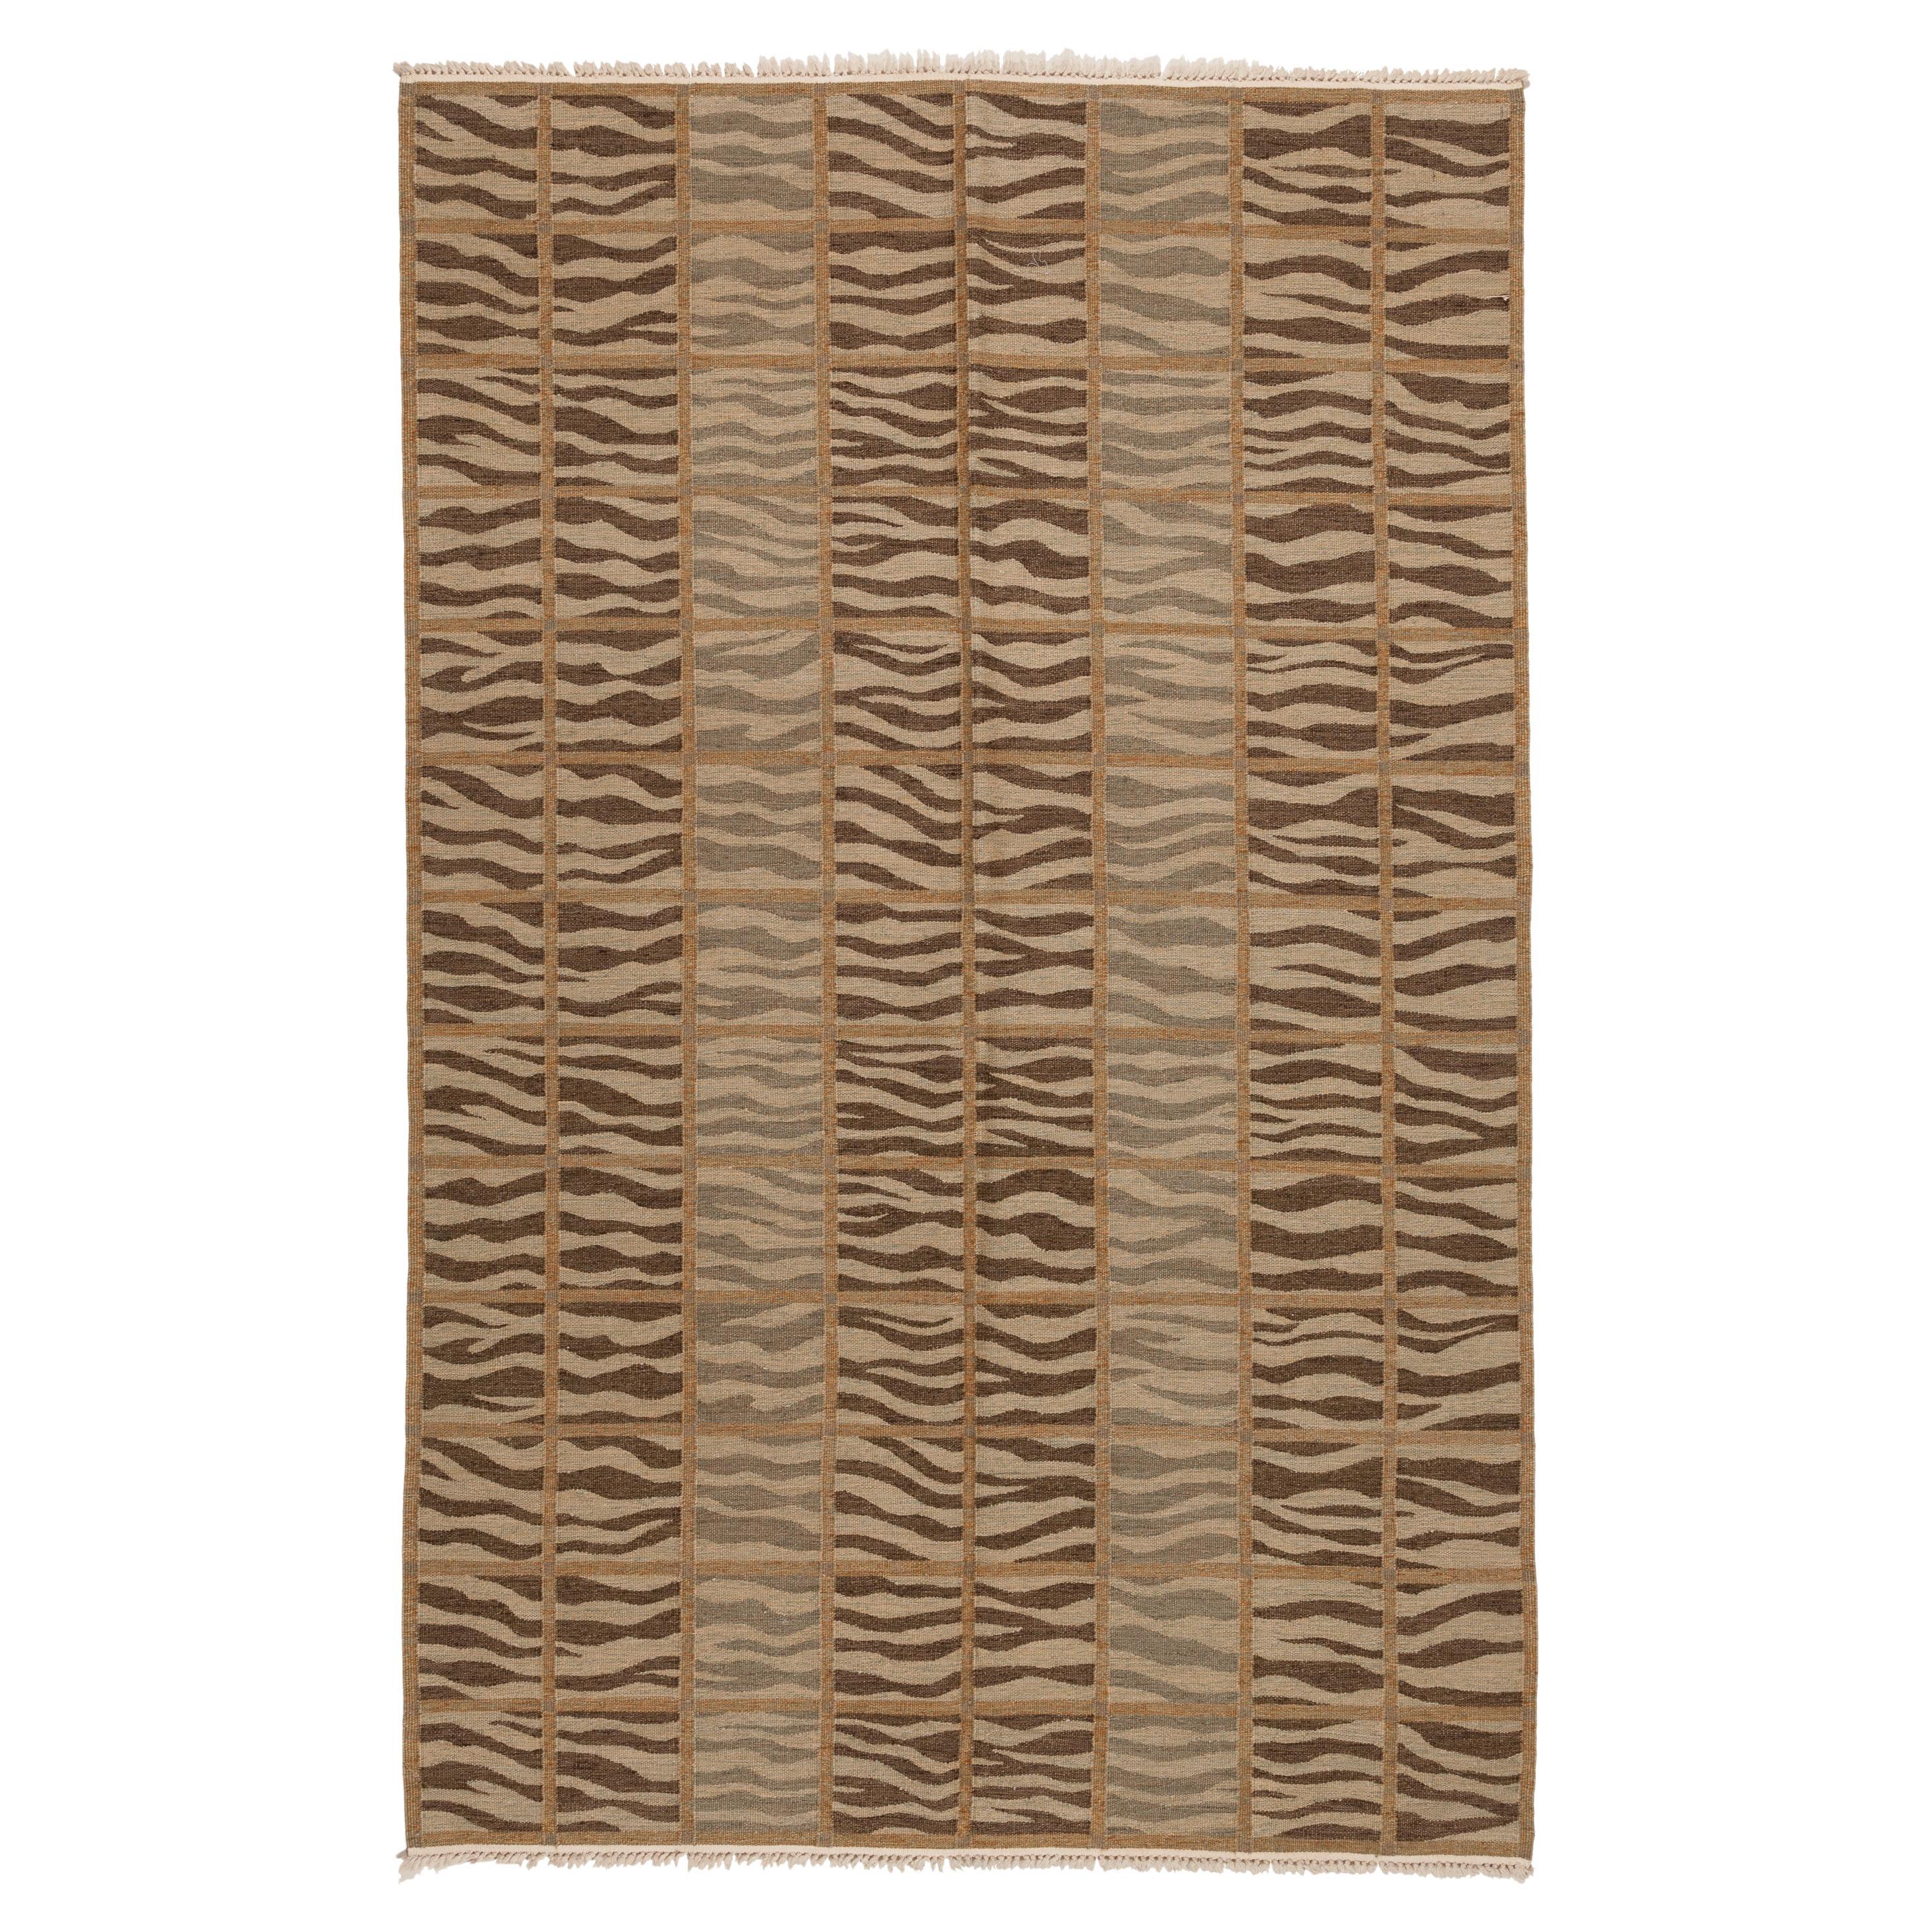 Collection de tapis Ararat - Tapis Kilim moderne tissé à plat - Tapis zébré marron et beige